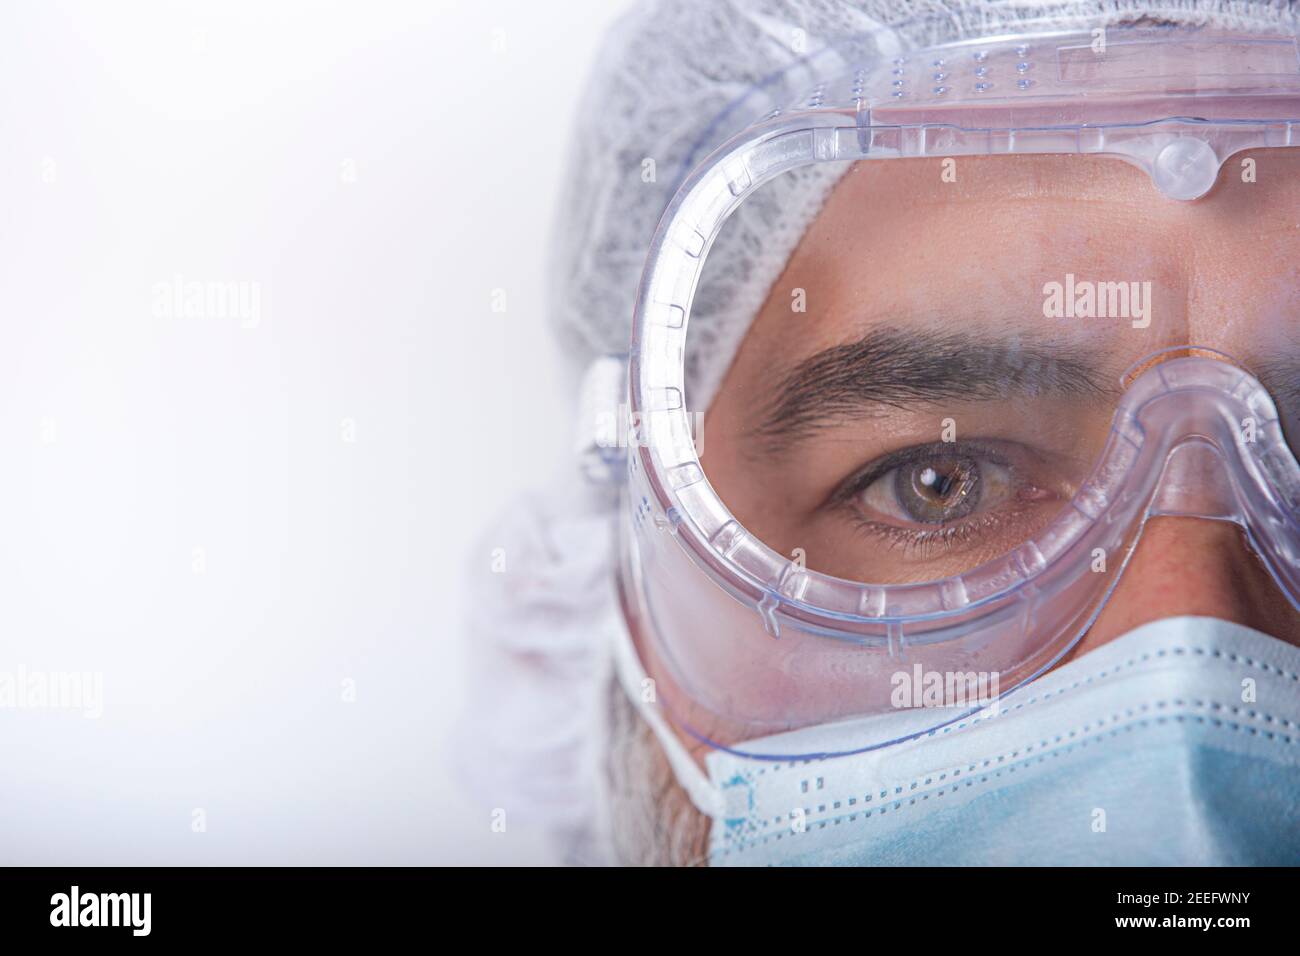 Une infirmière en gros plan portant un masque pendant la pandémie du coronavirus, des lunettes de sécurité et des gants. Espace pour le texte Banque D'Images